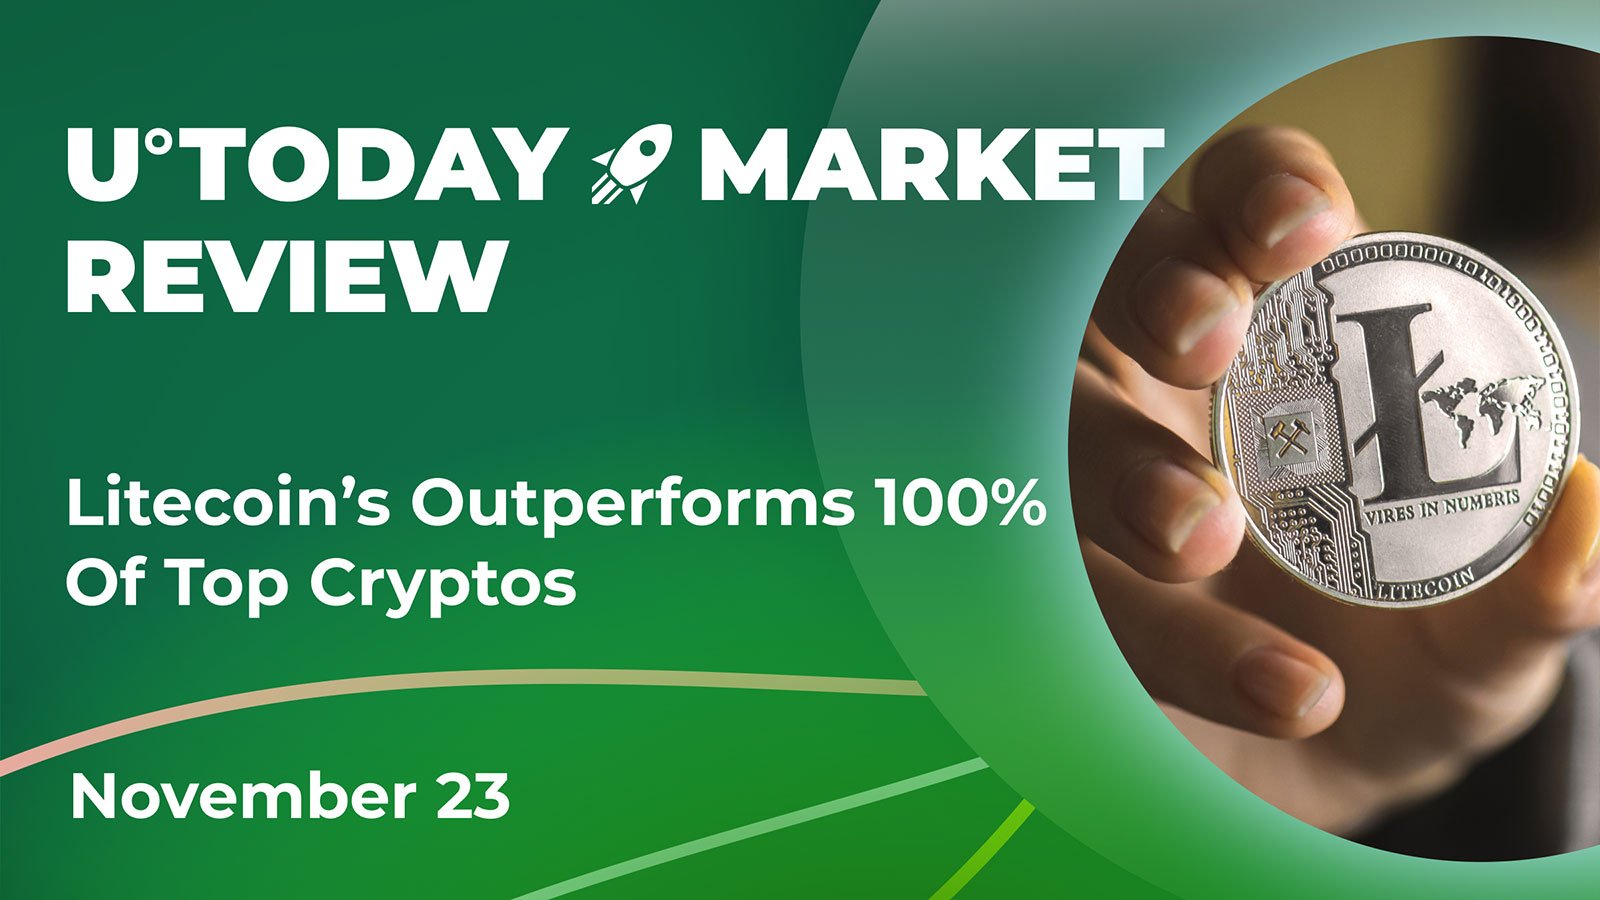 Litecoin’s Outperforms 100% Of Top Cryptos: Crypto Market Review, Nov. 23